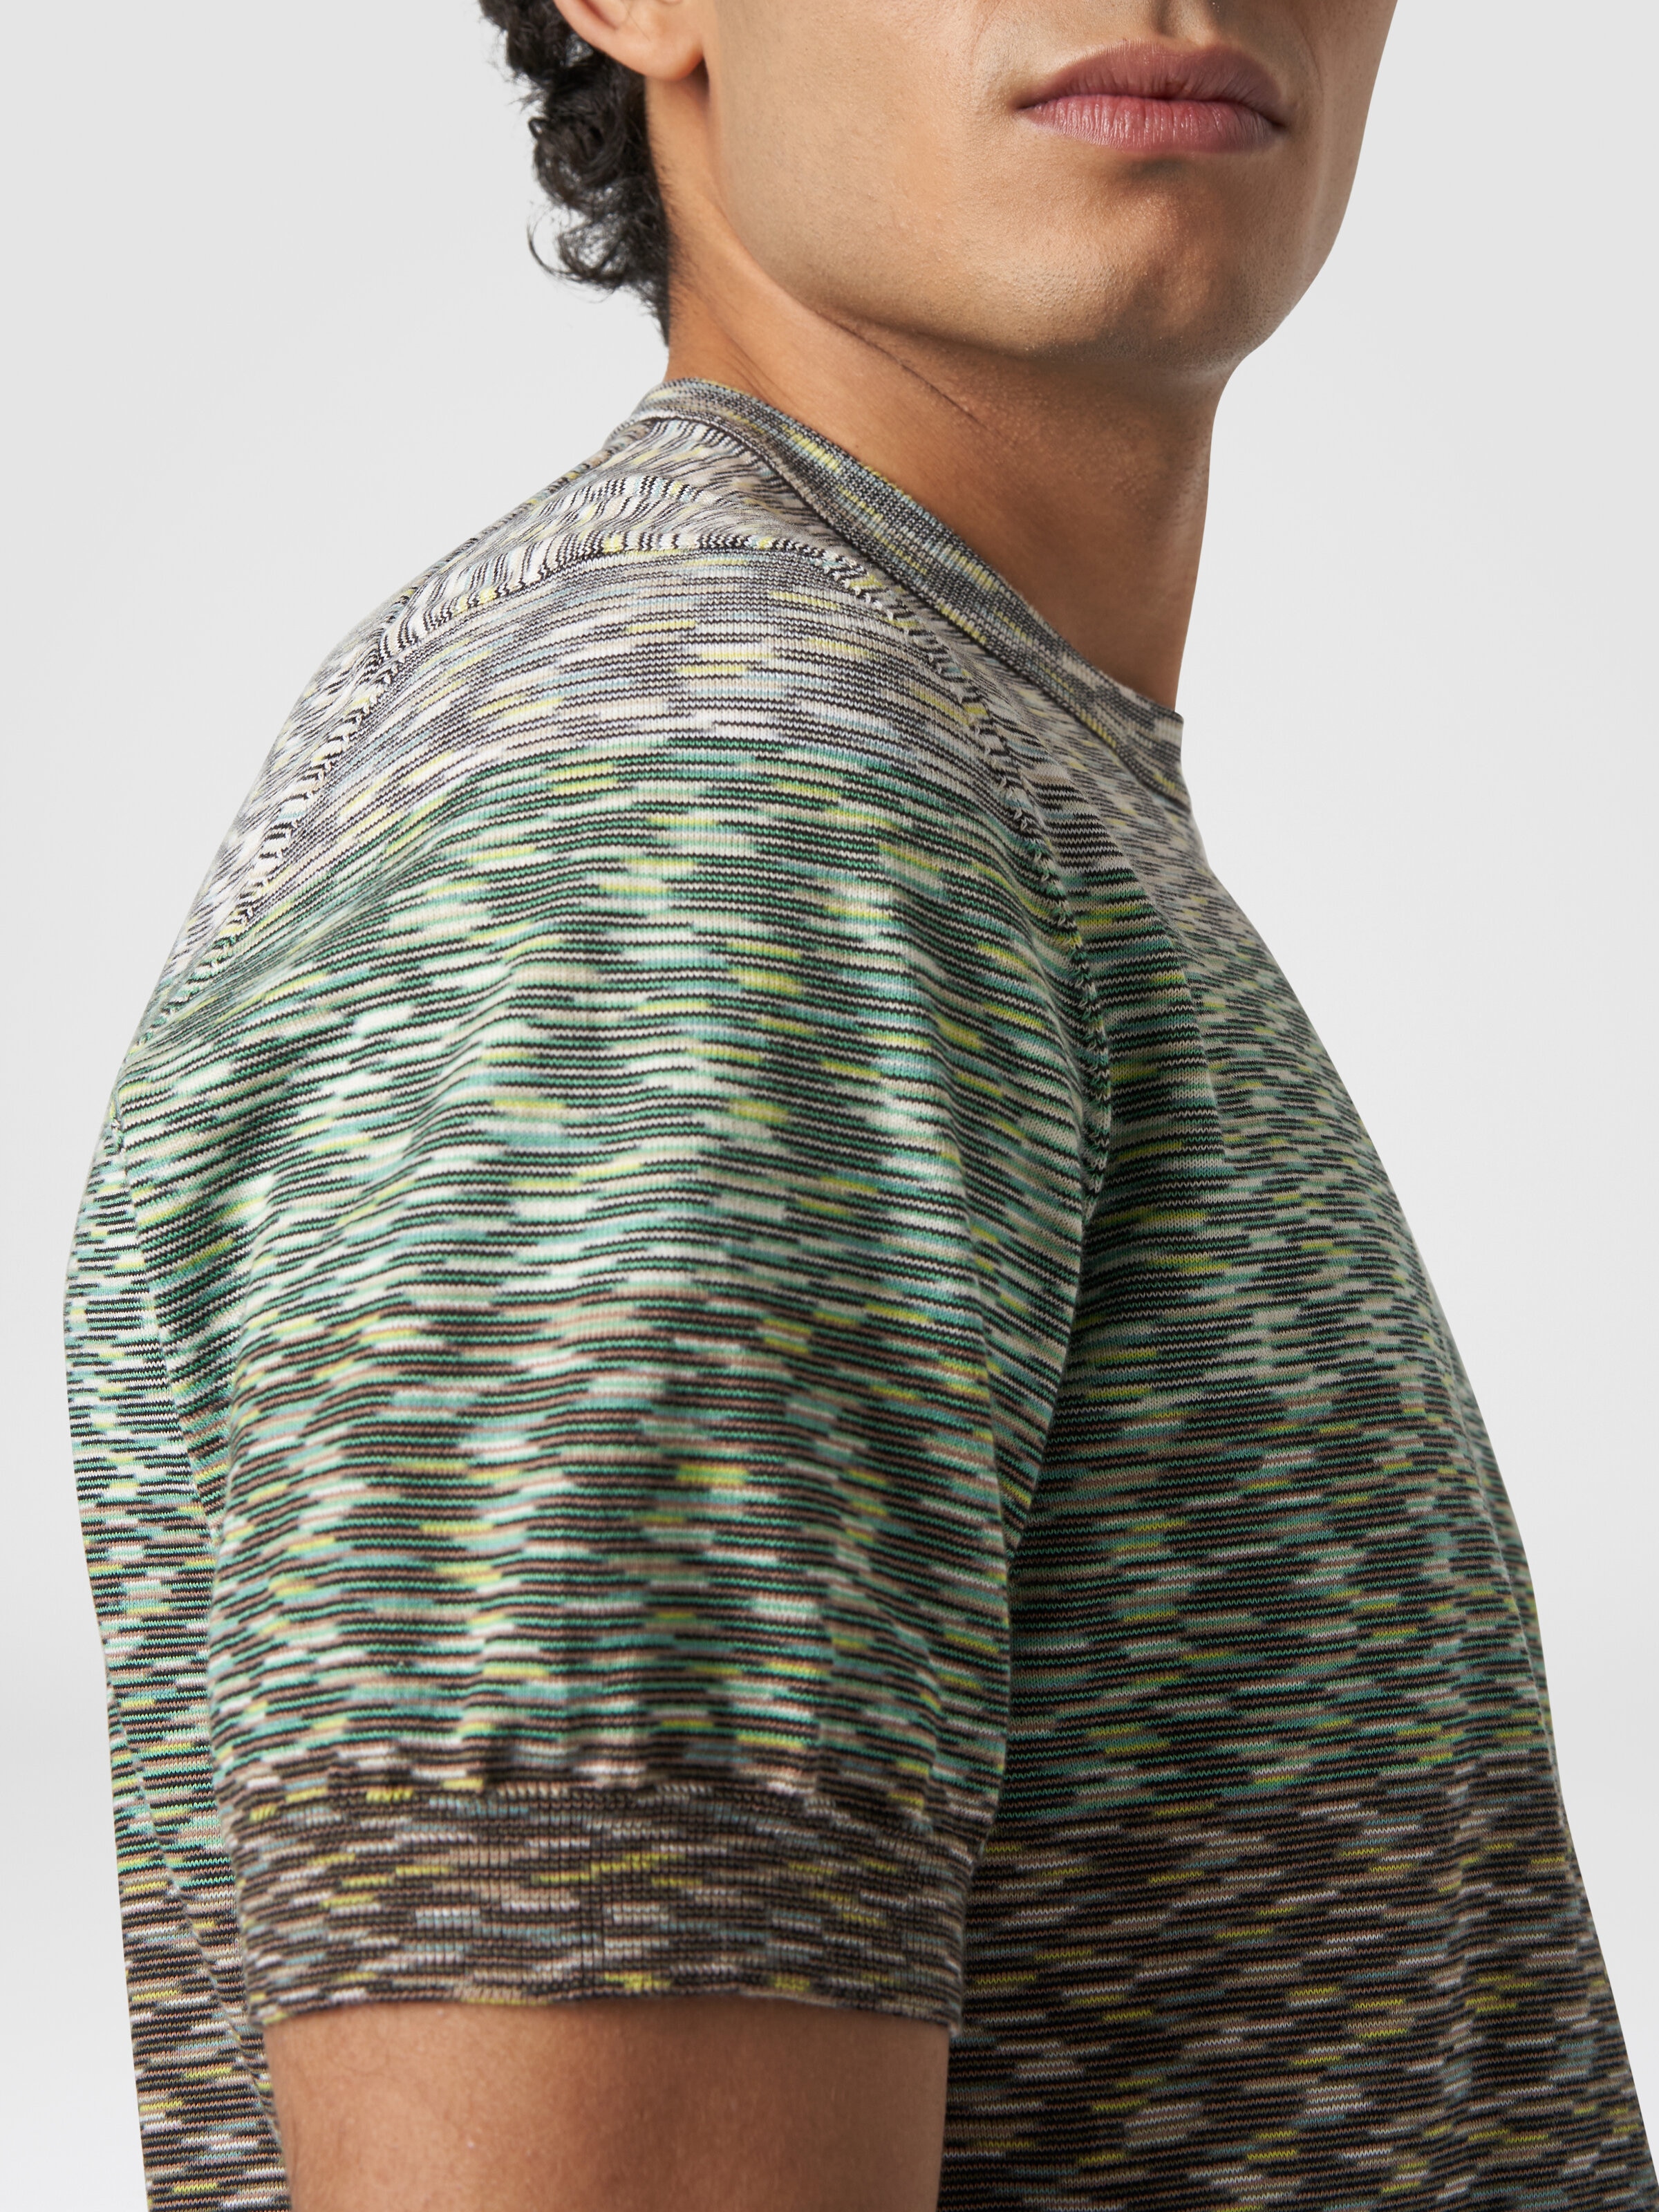 Rundhals-T-Shirt aus Baumwolle in Flammgarnoptik mit Dégradé-Effekt, Mehrfarbig  - 4